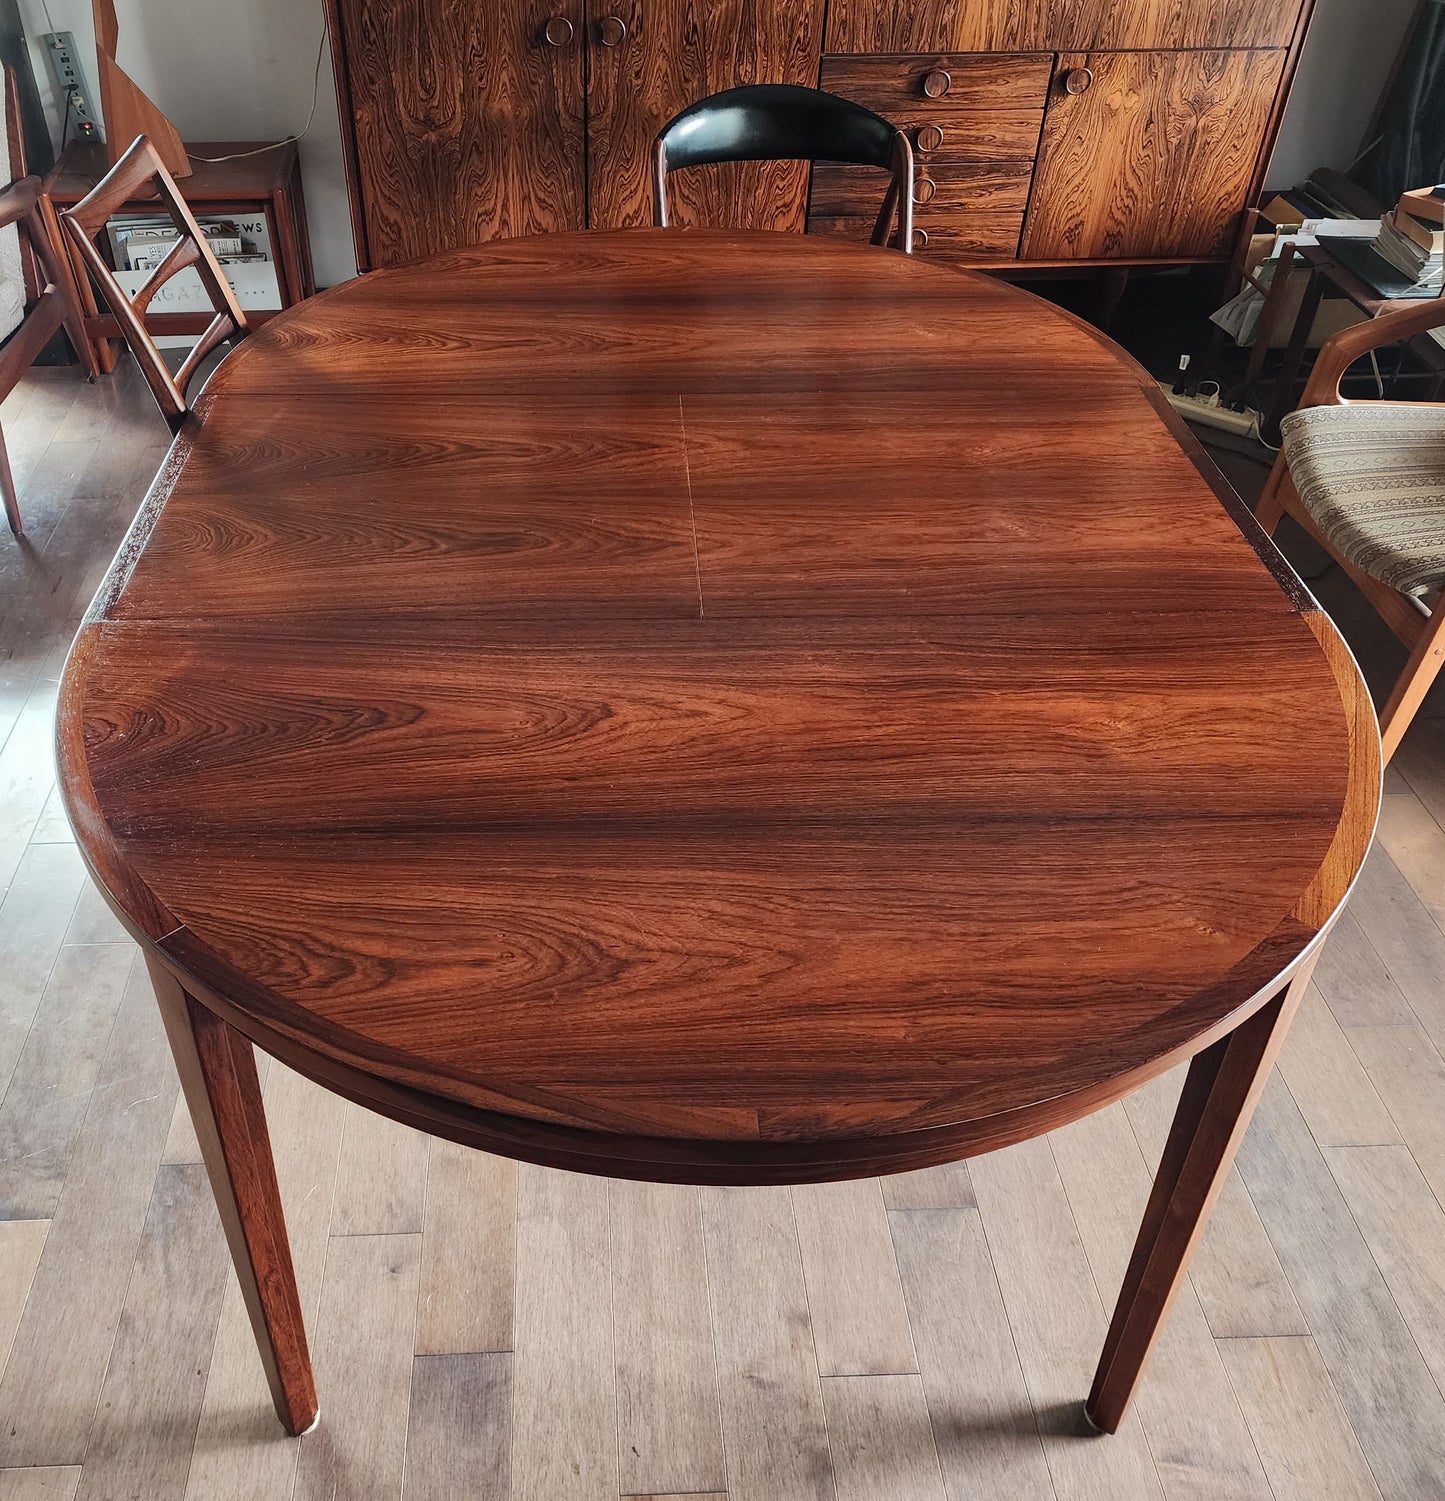 REFINISHED Danish Mid Century Modern Rosewood Table Round w 1 Leaf by H.Rosengren Hansen 47"- 67"